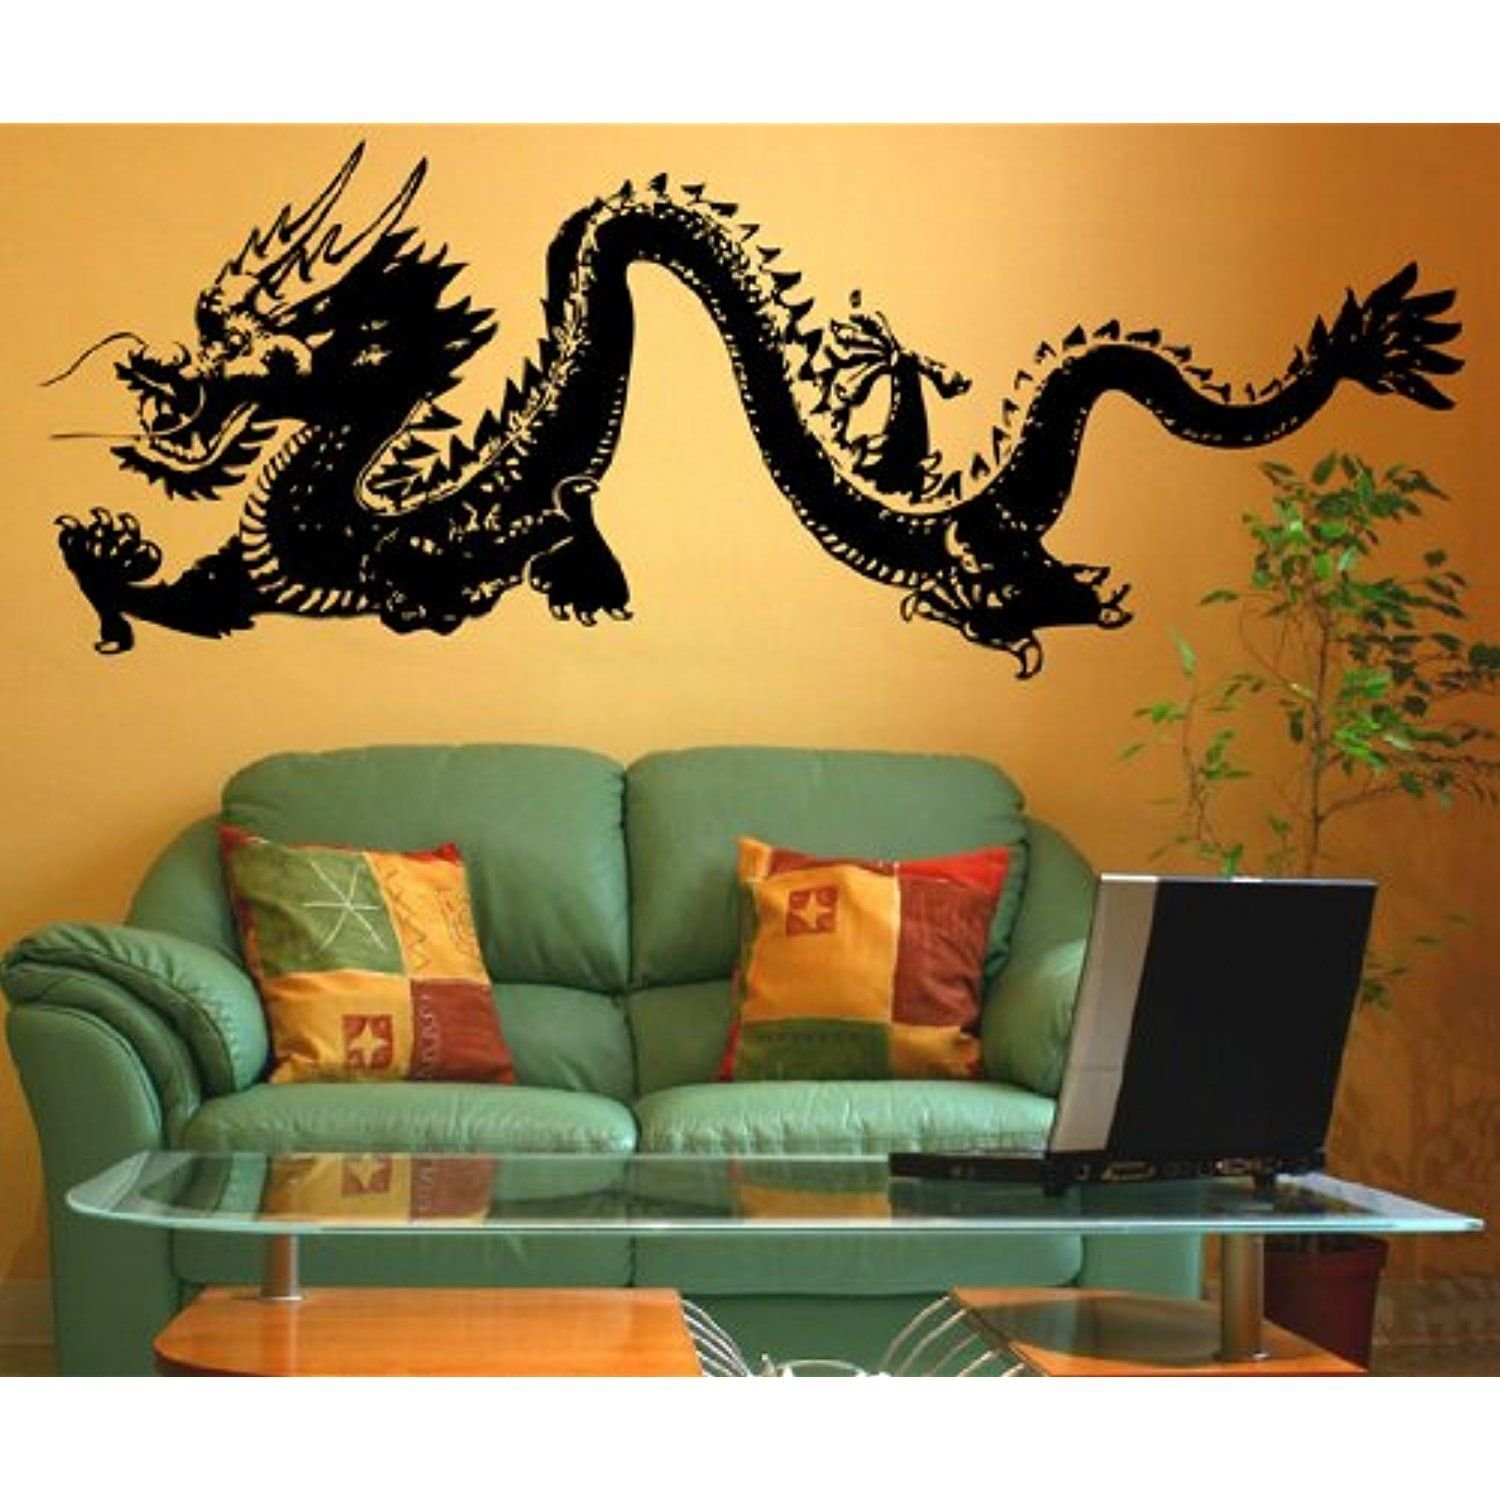 Китайский дракон в интерьере | Смотреть 49 идеи на фото бесплатно